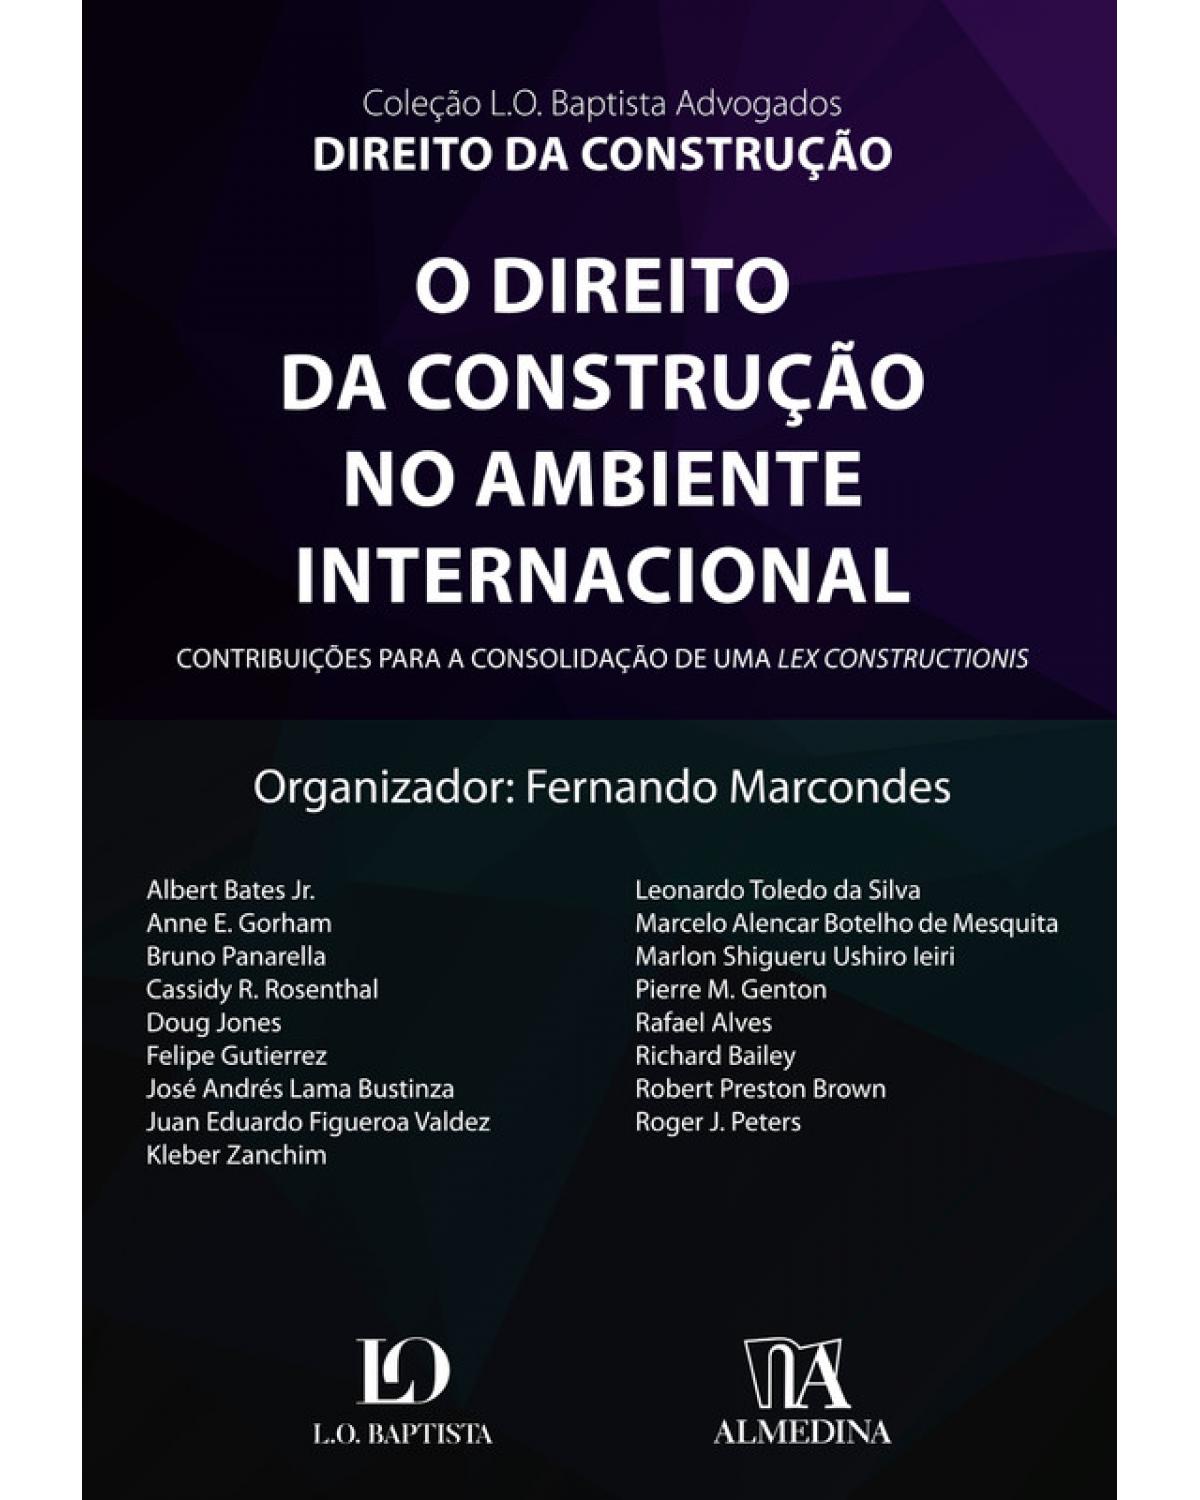 O direito da construção no ambiente internacional - contribuições para a consolidação de uma Lex Constructionis - 1ª Edição | 2019